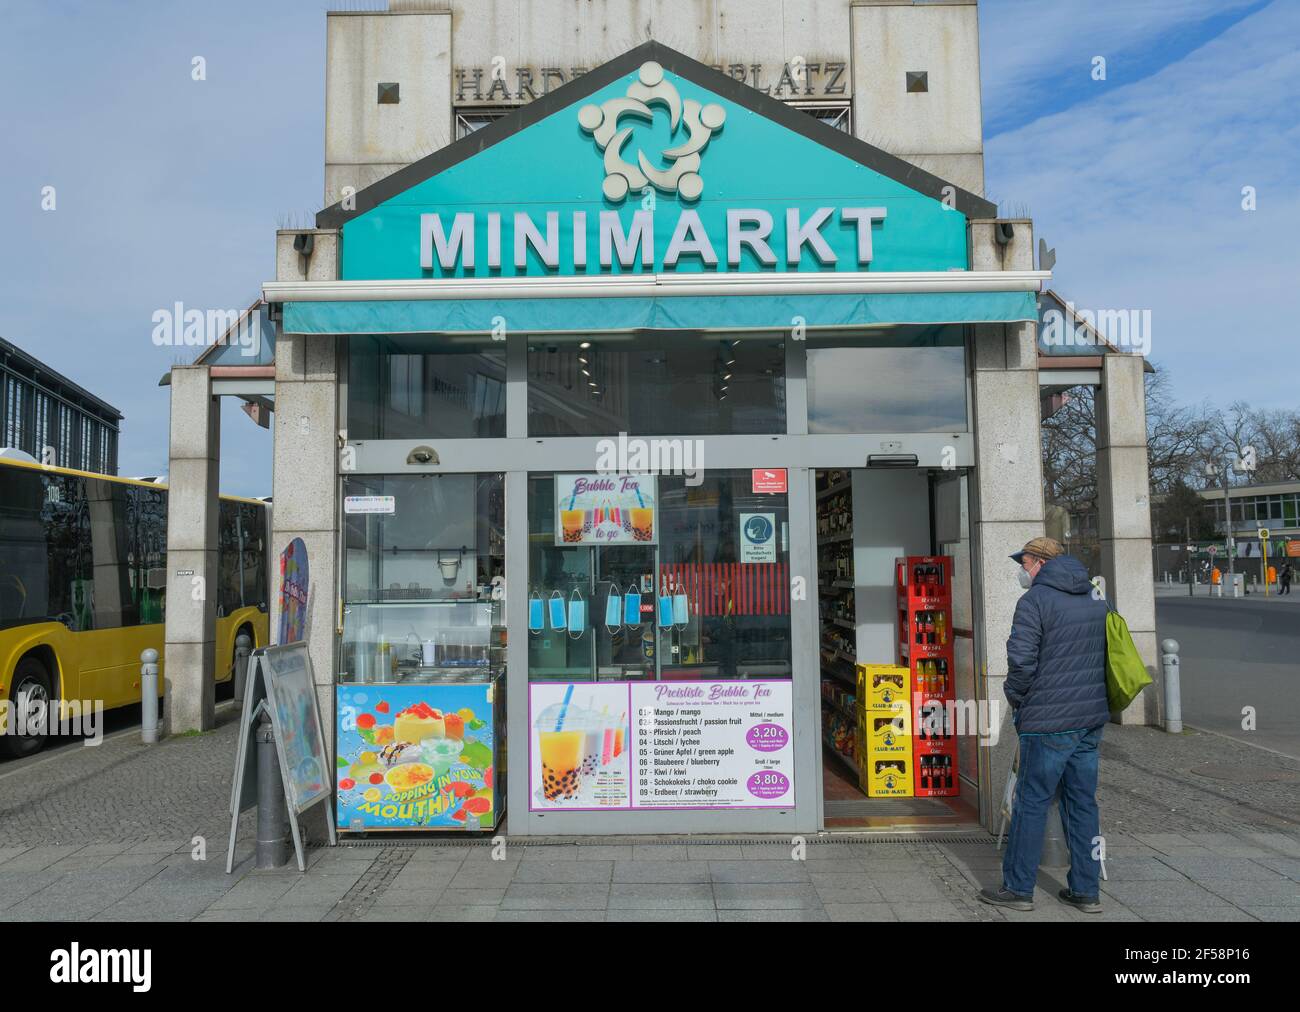 Minimarkt, Hardenbergplatz, Charlottenburg, Berlin, Deutschland Stock Photo